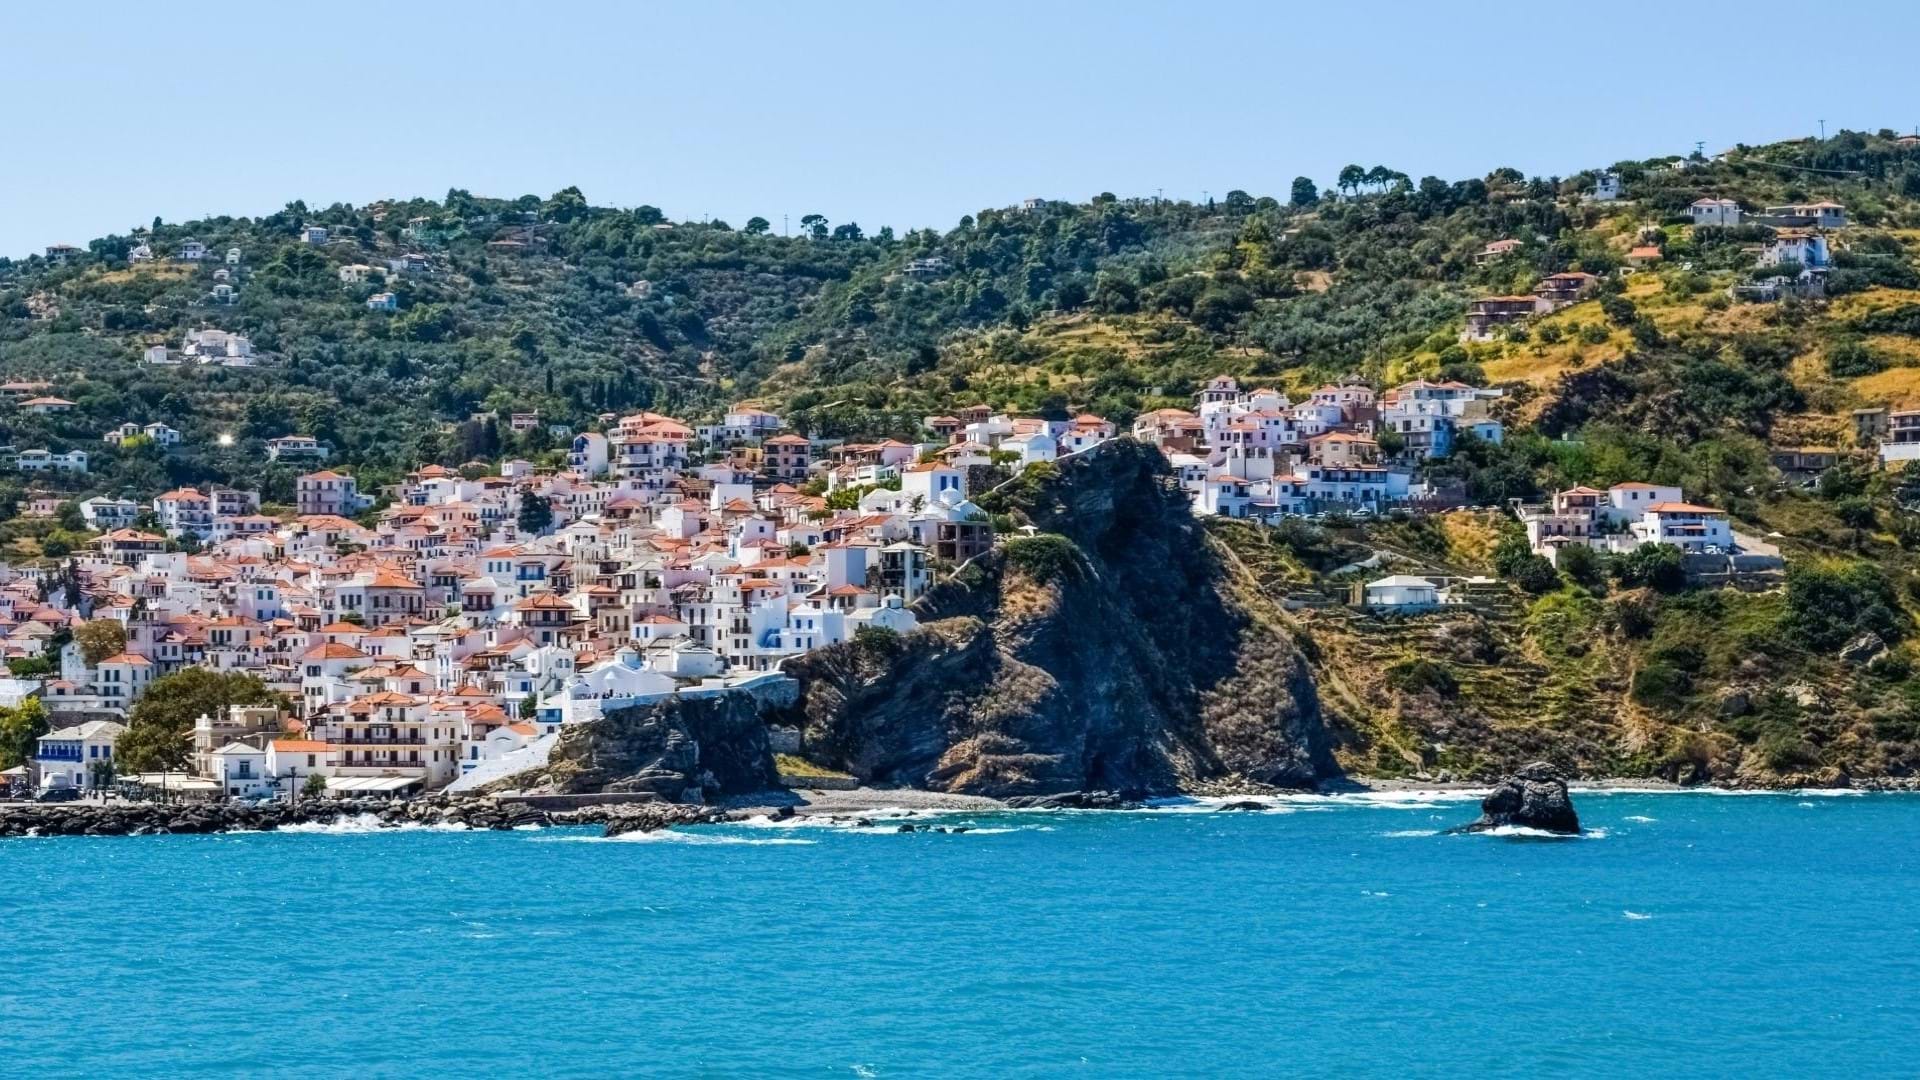 Ostrvo Skopelos u Grčkoj, slikano sa broda i pučine. Prelepo naselje na strmoj obali ostrva.